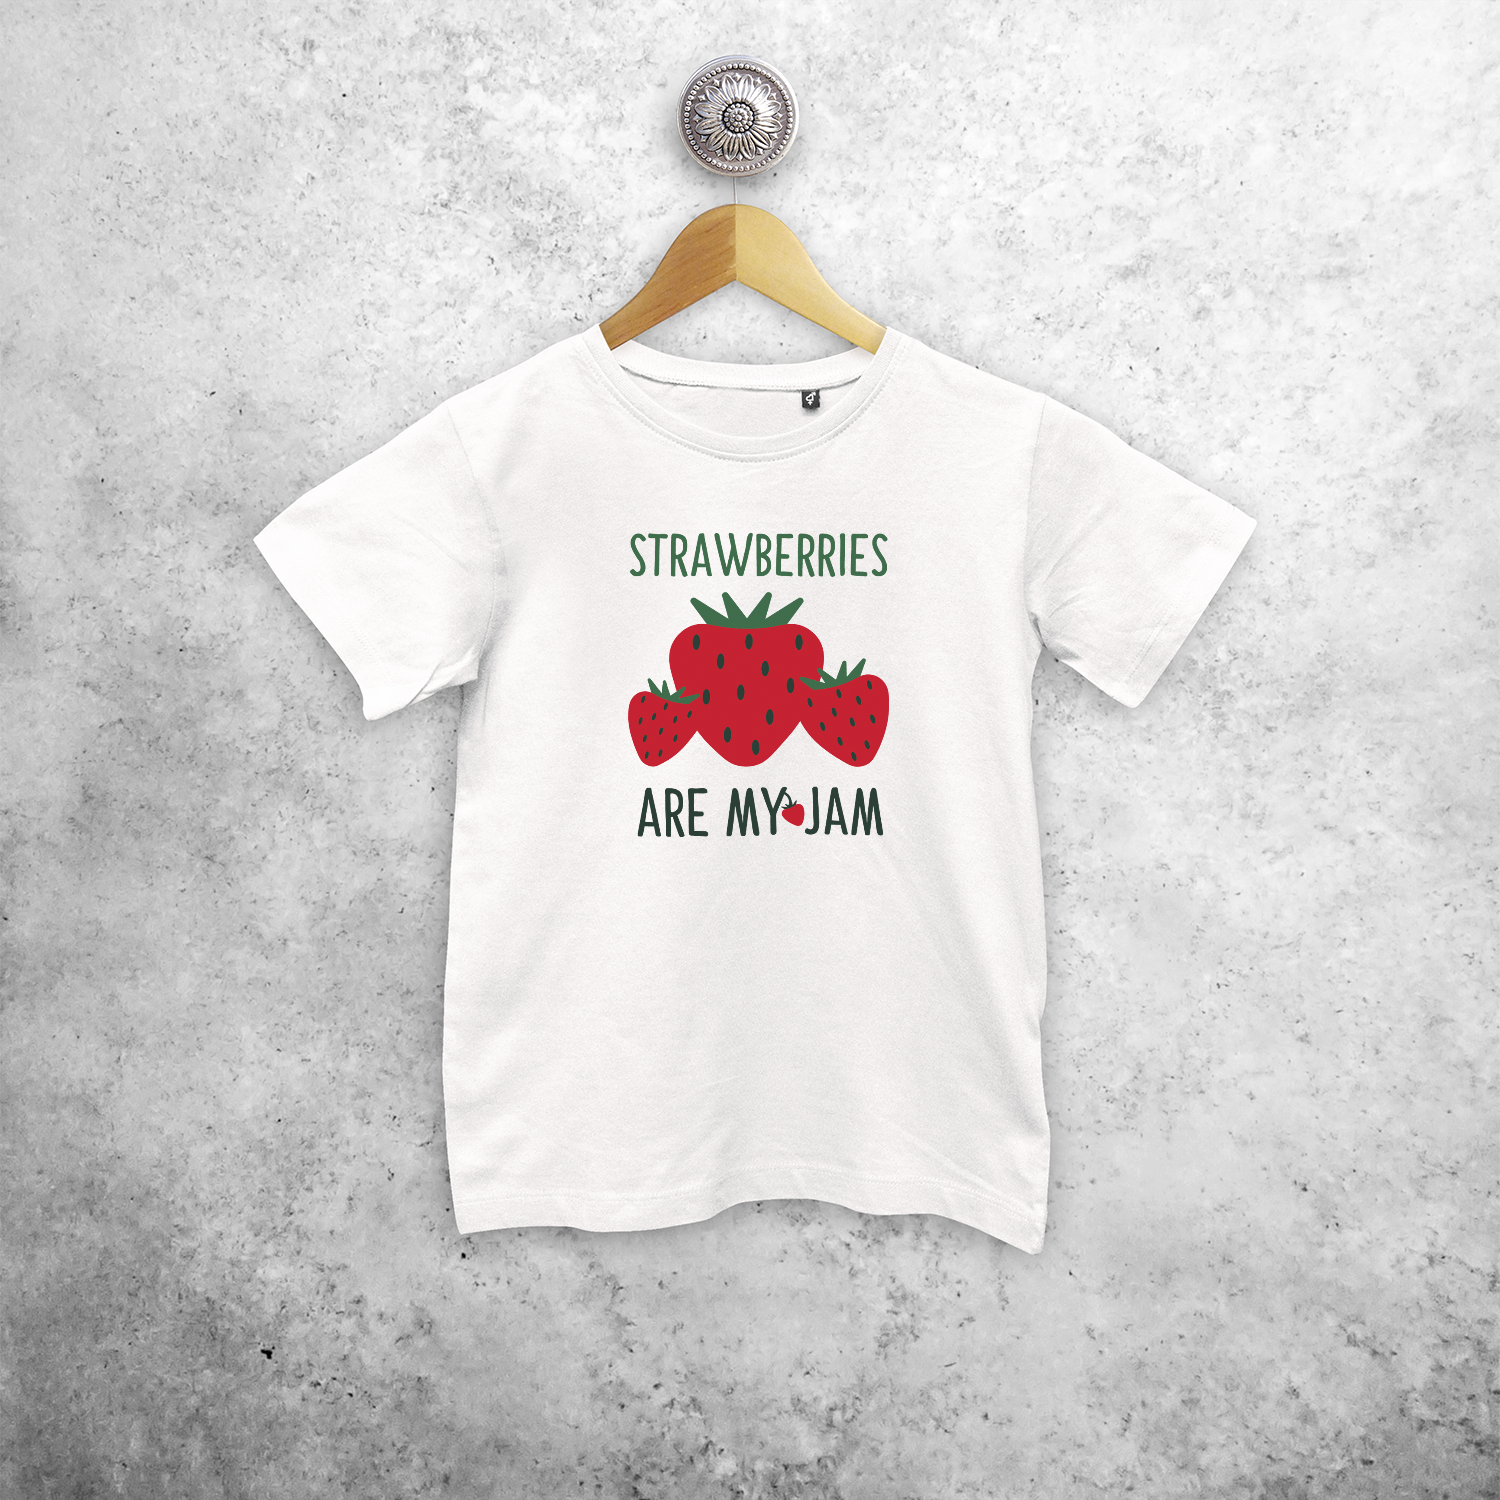 'Strawberries are my jam' kids shortsleeve shirt